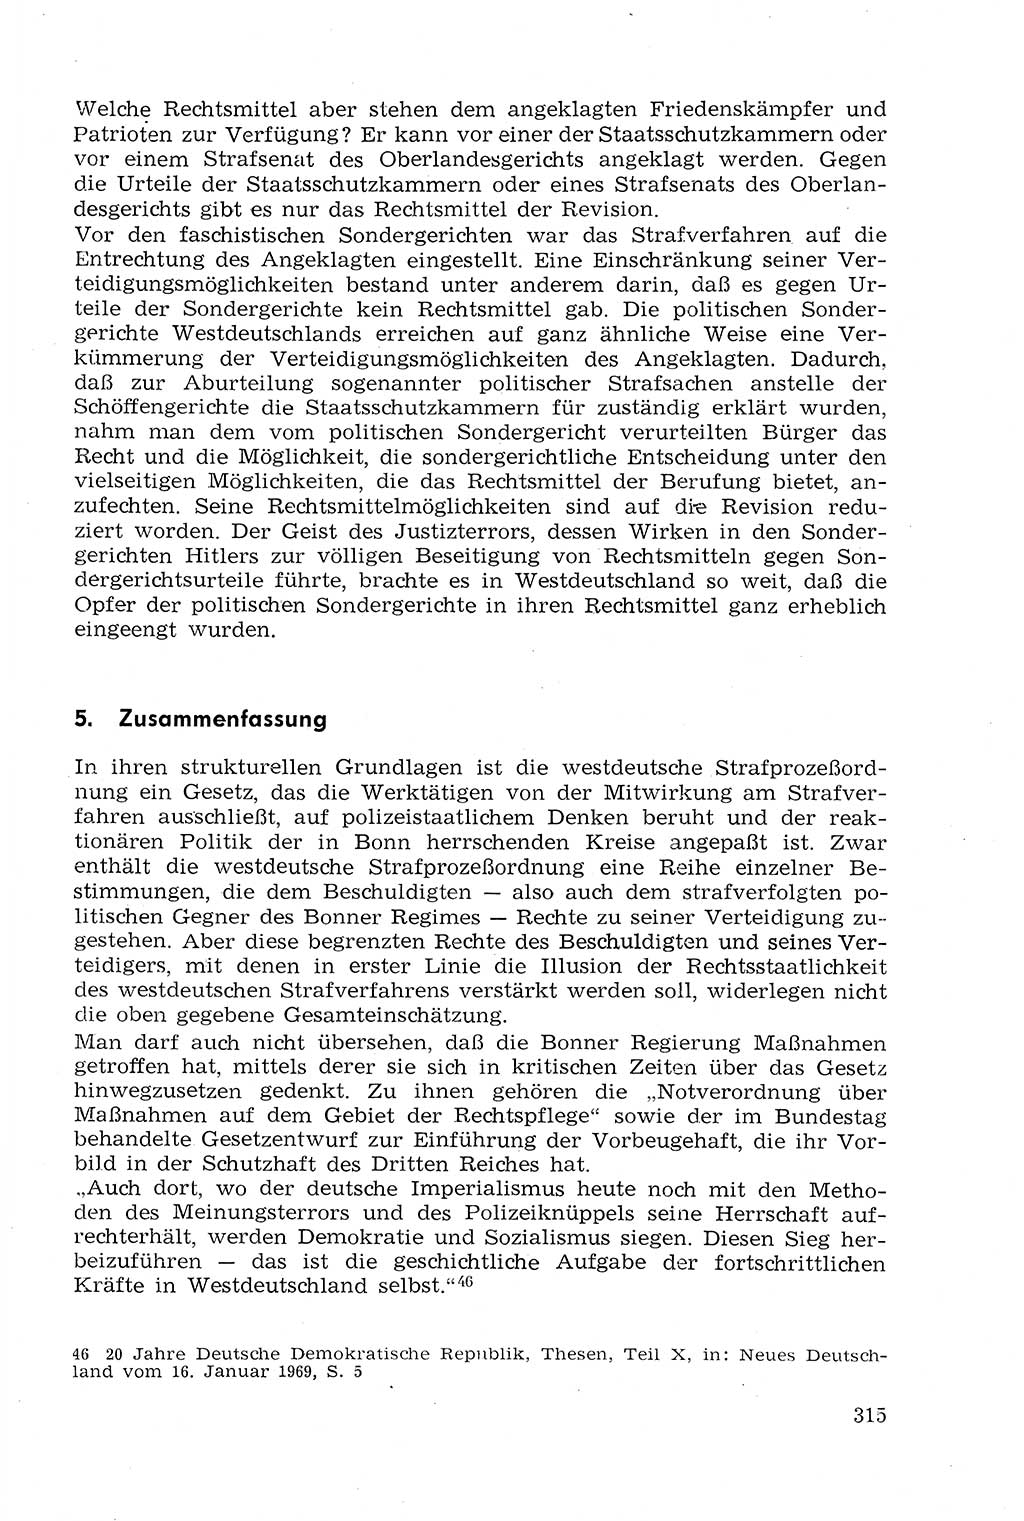 Strafprozeßrecht der DDR (Deutsche Demokratische Republik), Lehrmaterial 1969, Seite 315 (Strafprozeßr. DDR Lehrmat. 1969, S. 315)